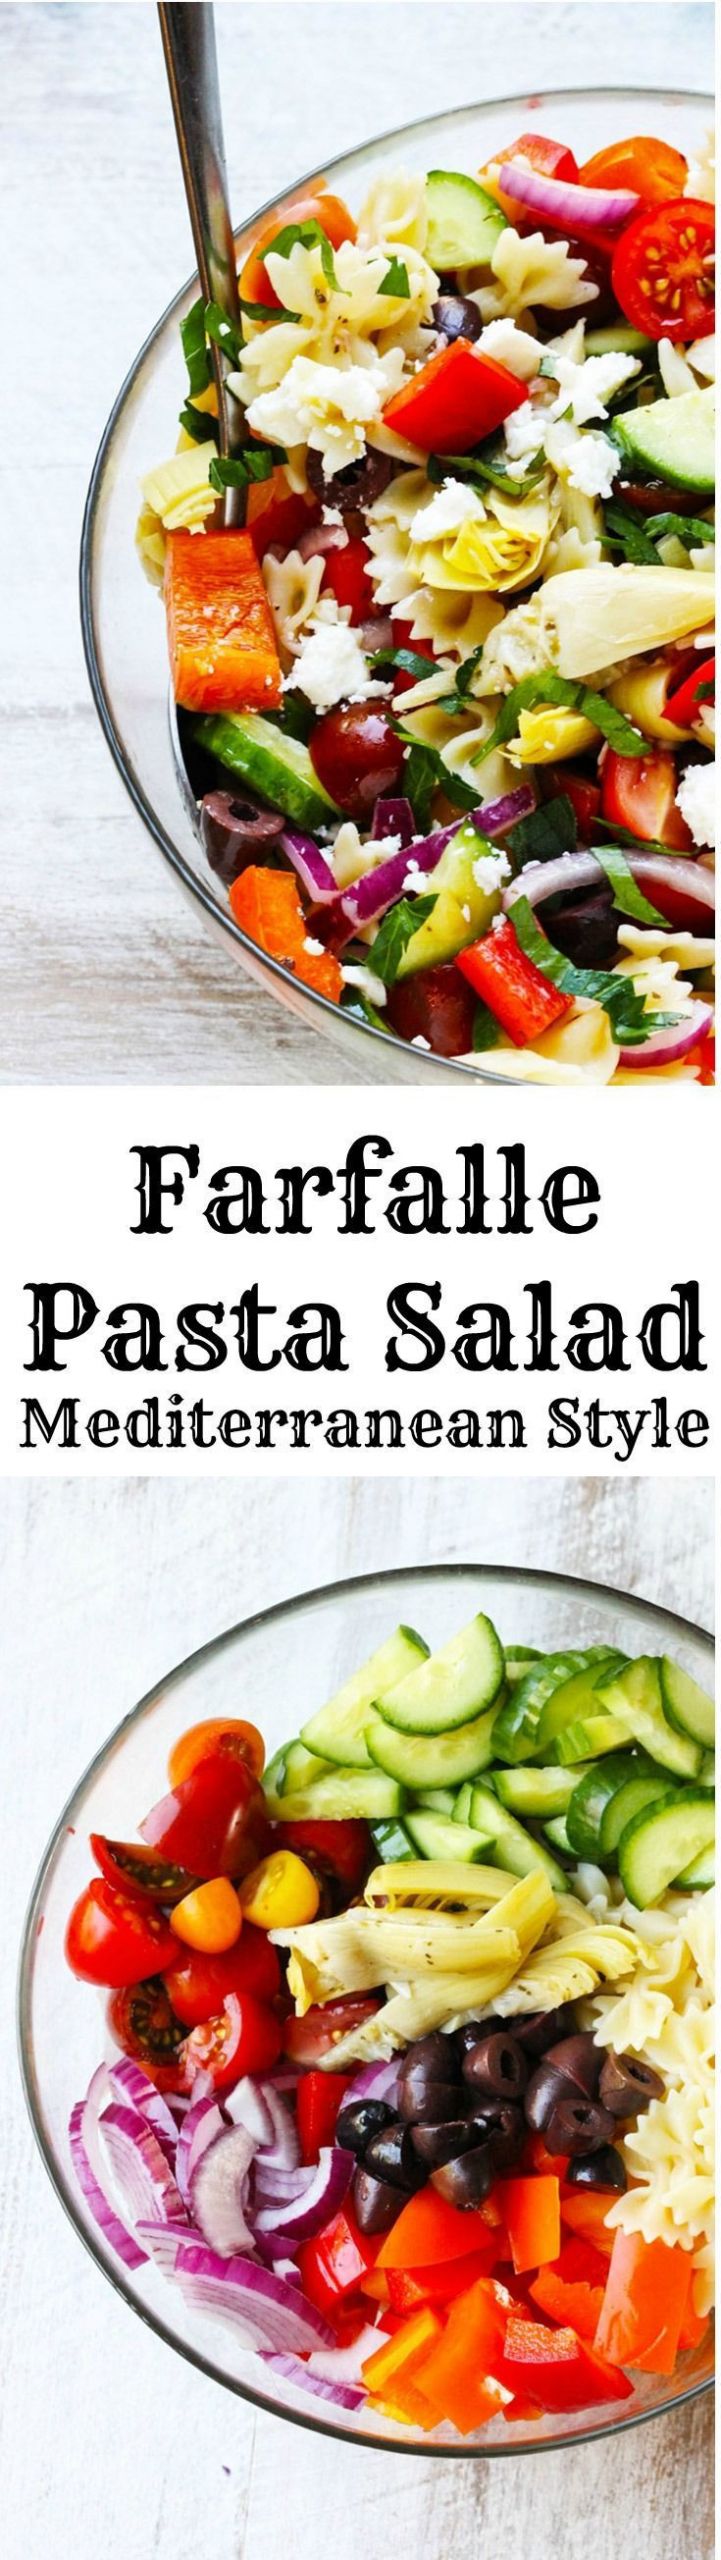 Farfalle Pasta Salad Recipes
 Farfalle Pasta Salad Mediterranean Style